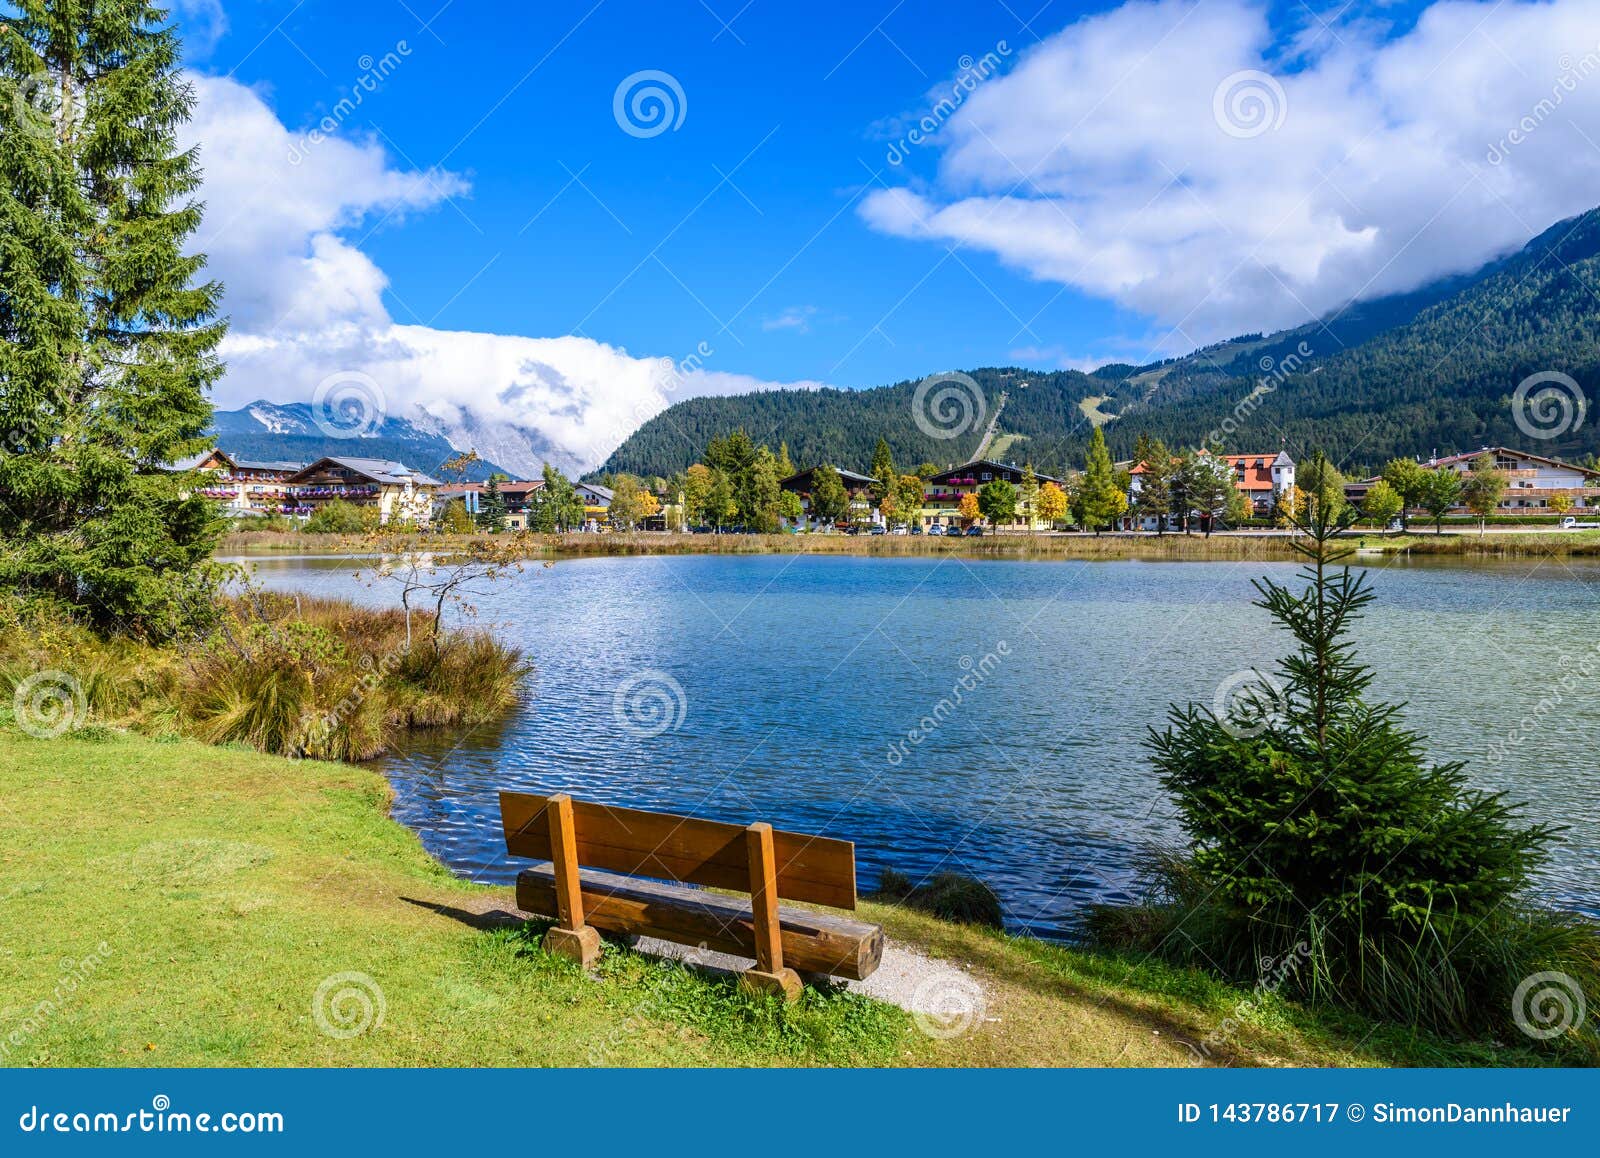 lake wildsee at seefeld in tirol, austria - europe